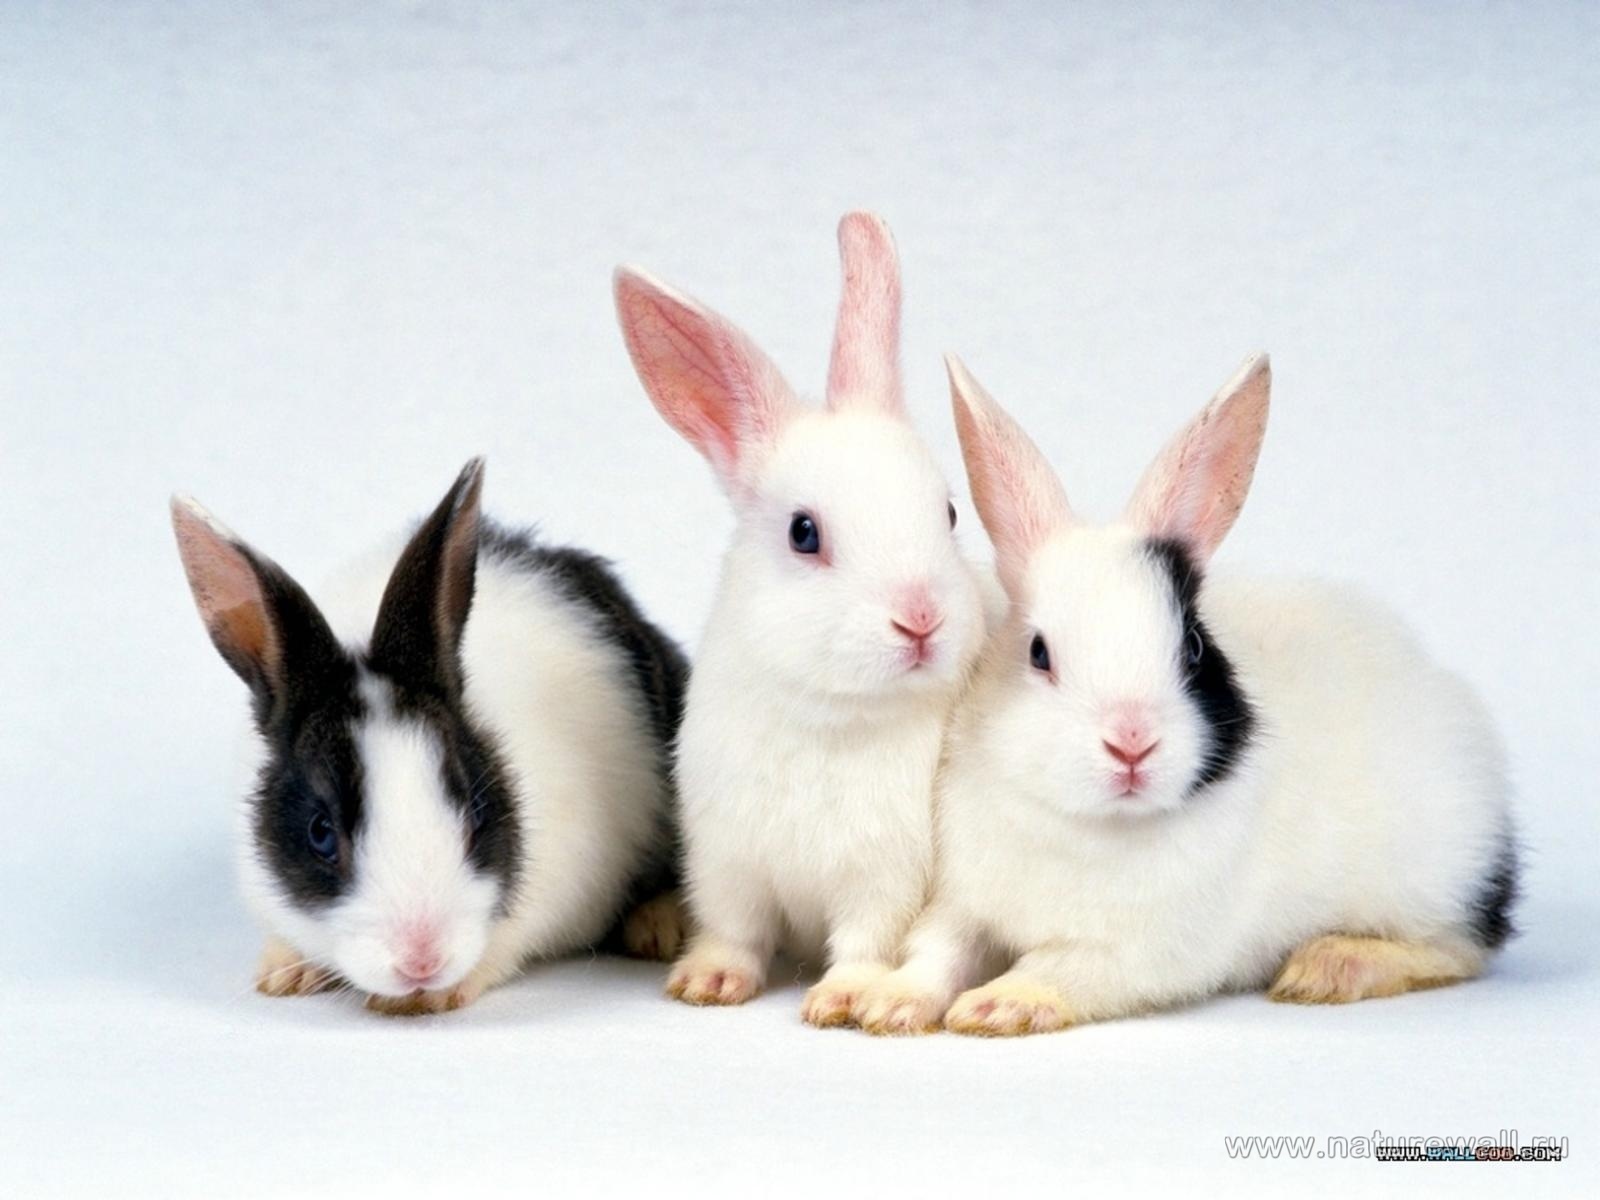 Скачать обои бесплатно Кролики, Животные картинка на рабочий стол ПК